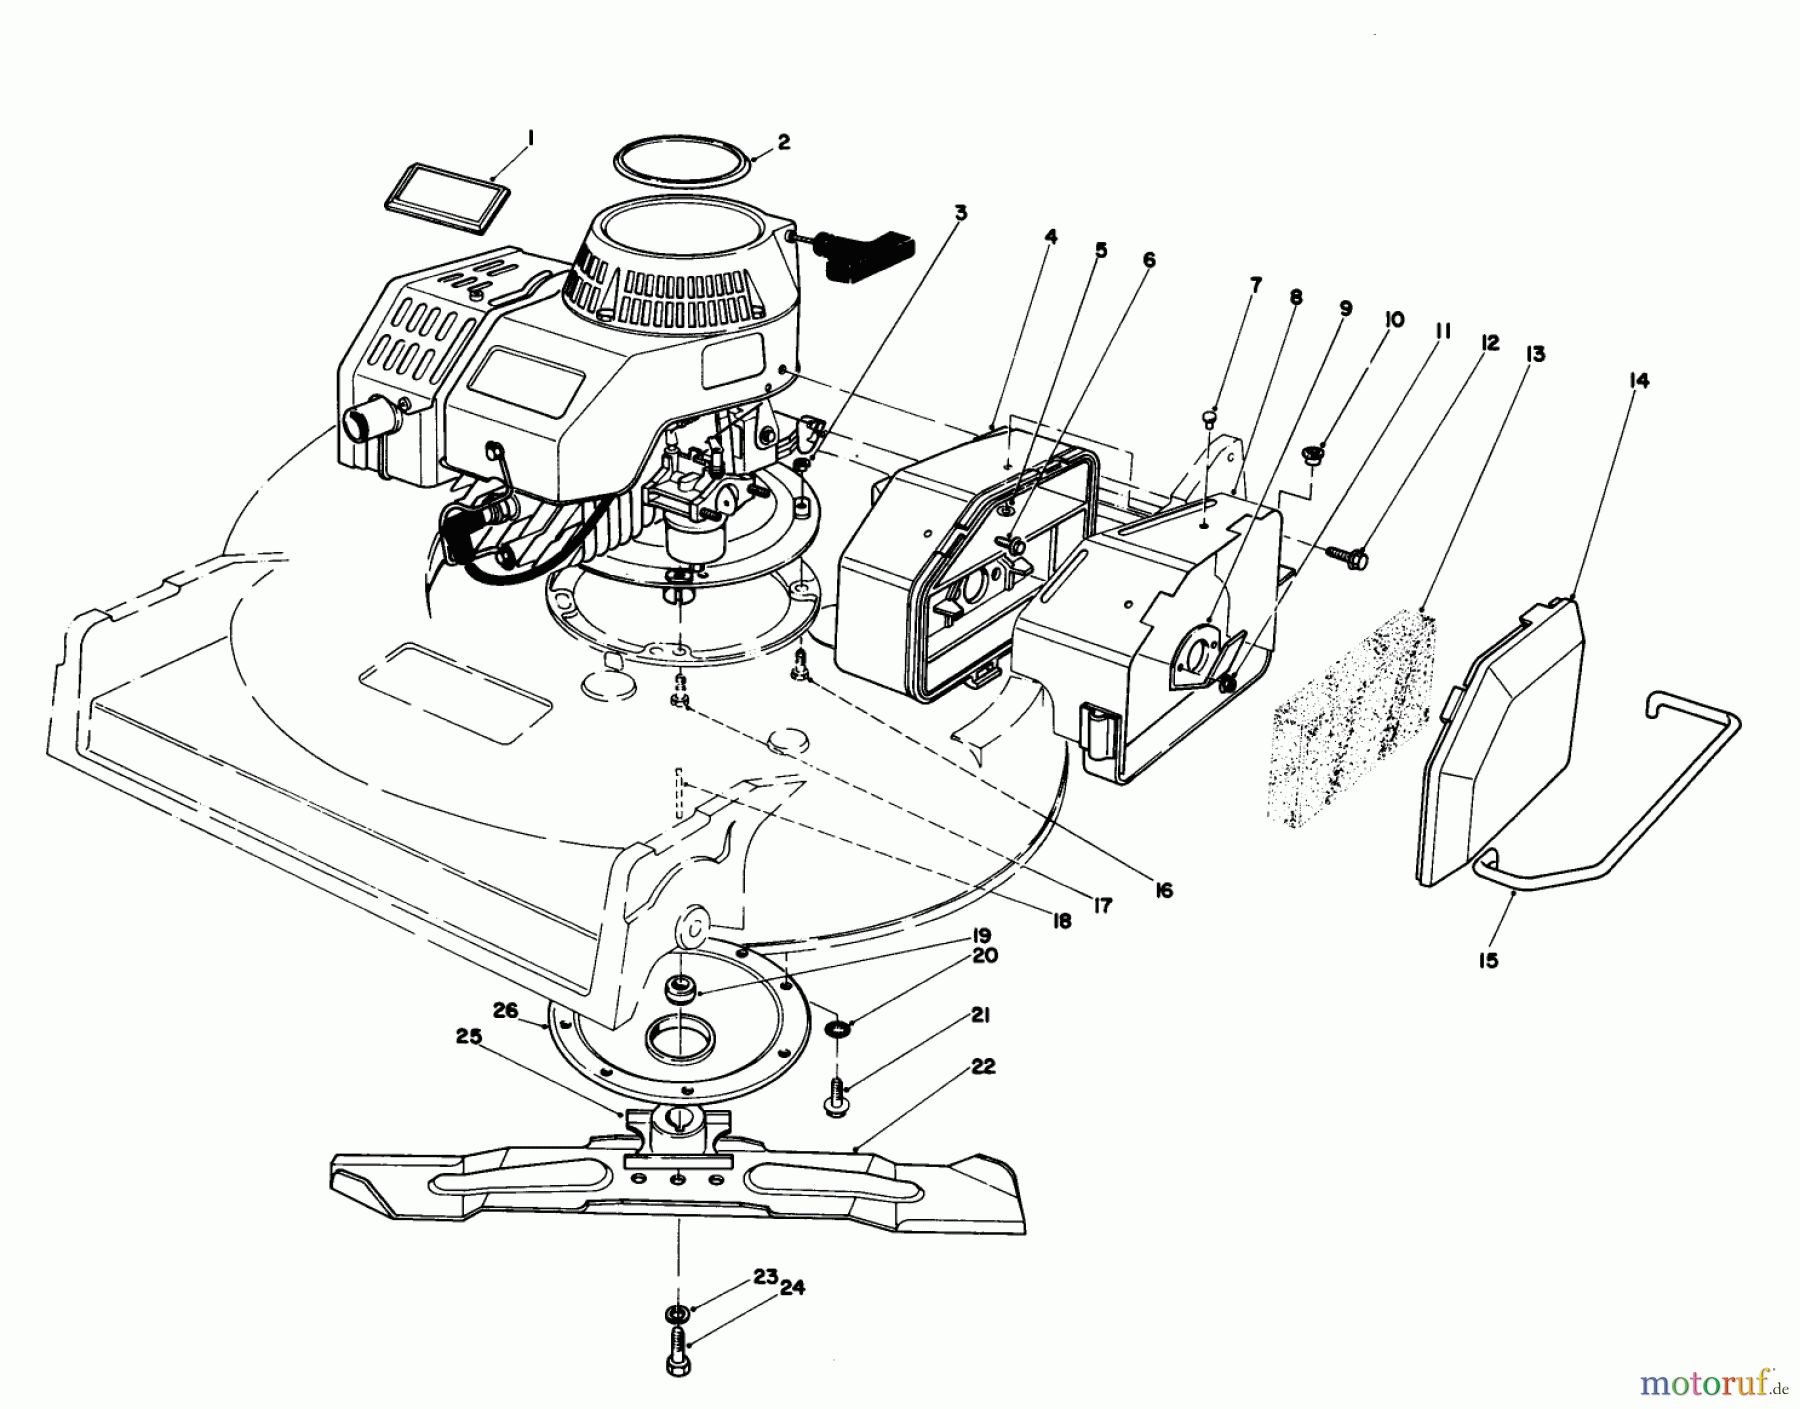  Toro Neu Mowers, Walk-Behind Seite 2 22030 - Toro Lawnmower, 1986 (6000001-6999999) ENGINE ASSEMBLY (MODEL 22030)